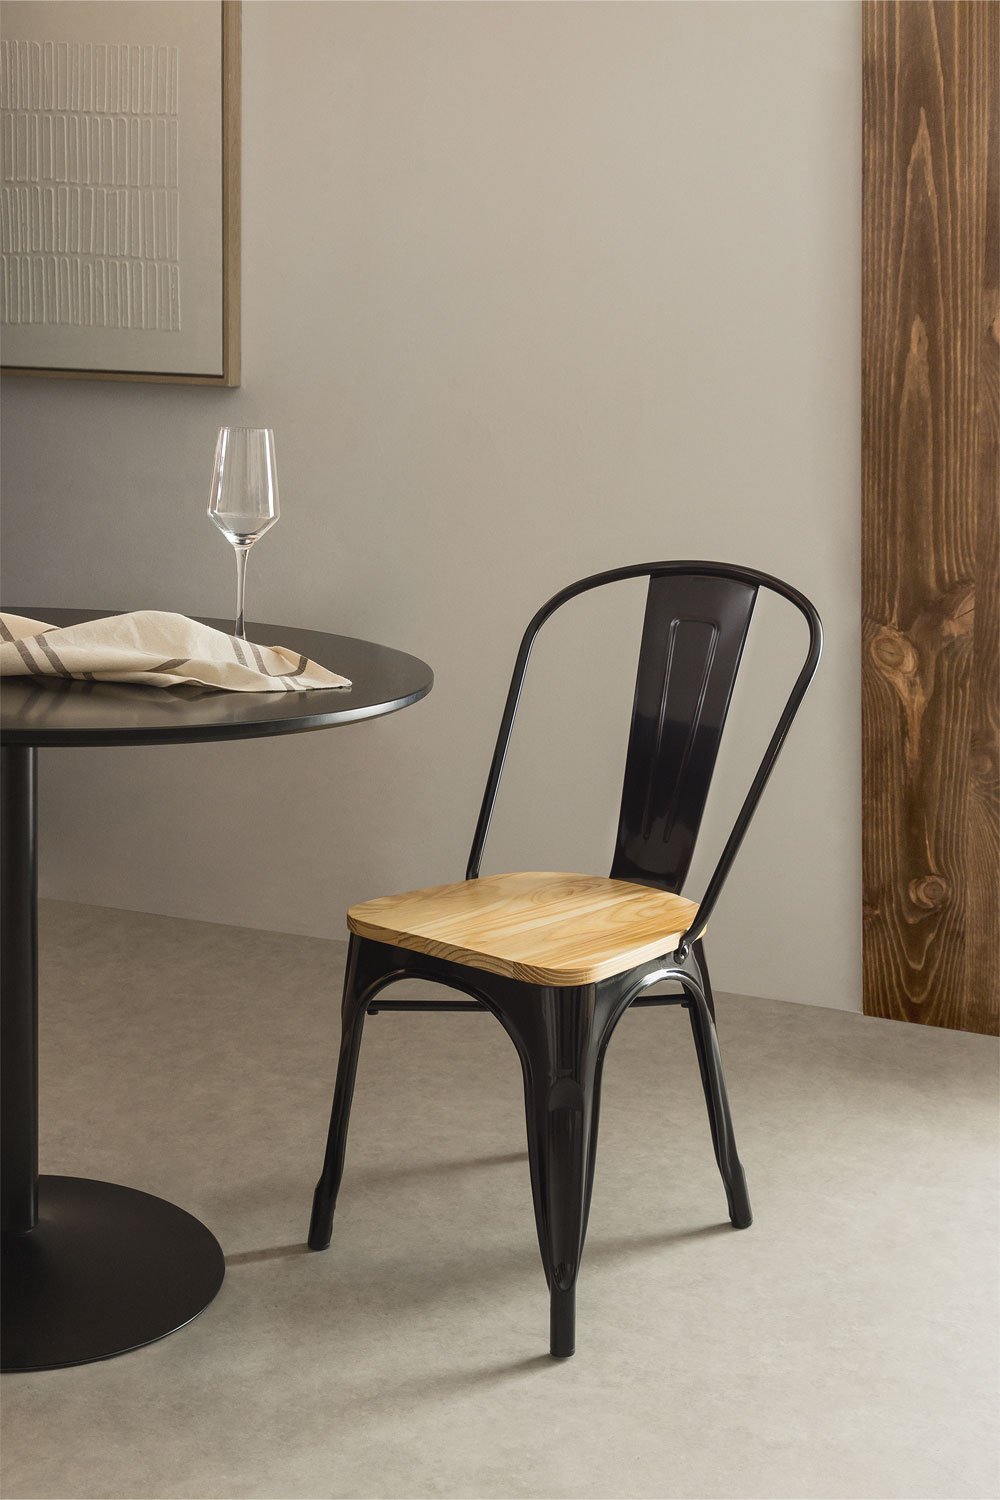 Stapelbare LIX stoel van hout, galerij beeld 1